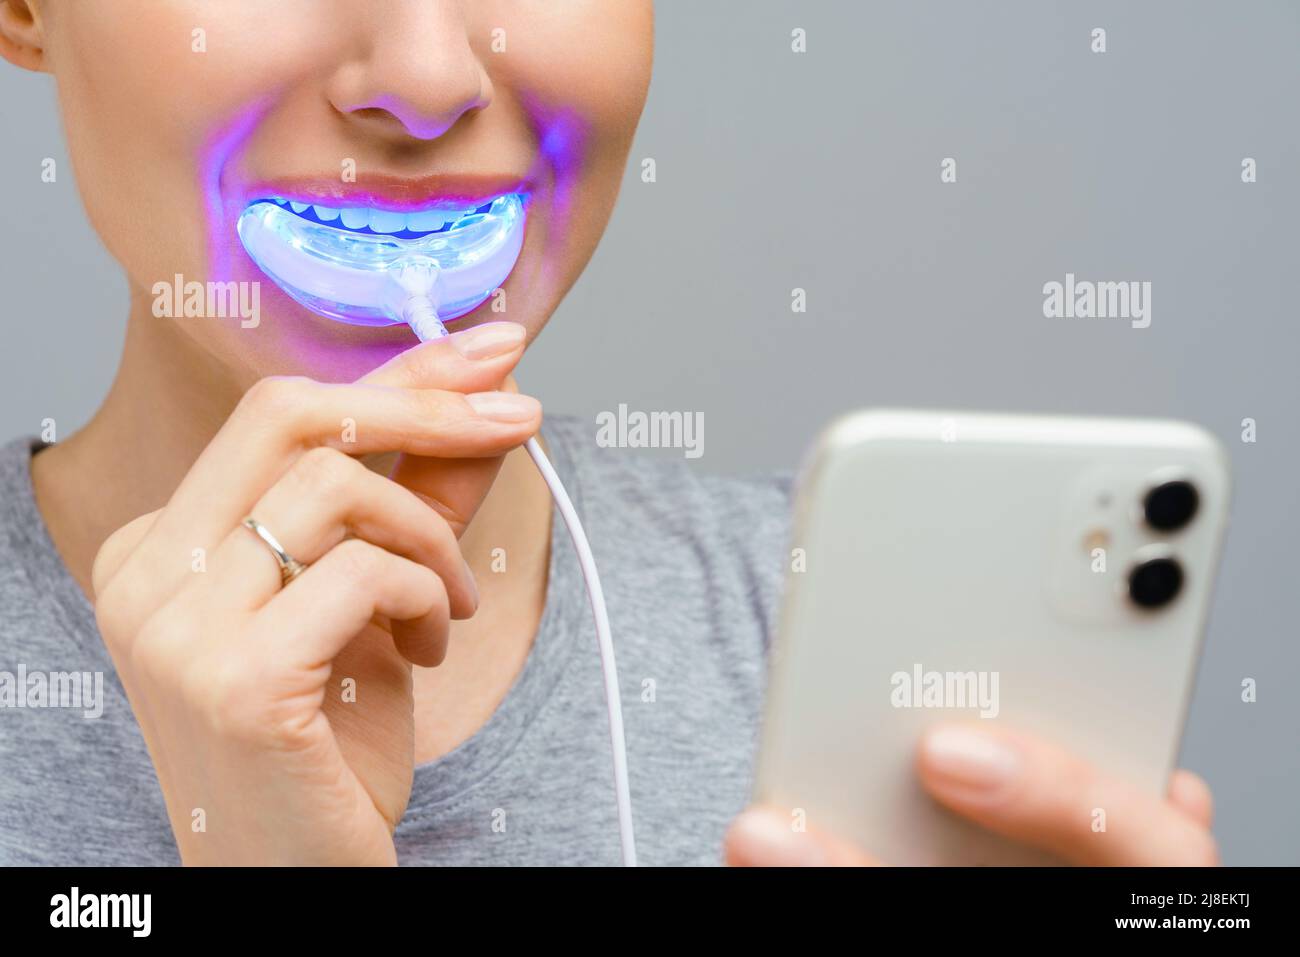 Una mujer sostiene en su mano una lámpara ultravioleta para blanquear los dientes del hogar. Una sonrisa blanca de nieve después de blanquear. Foto de stock